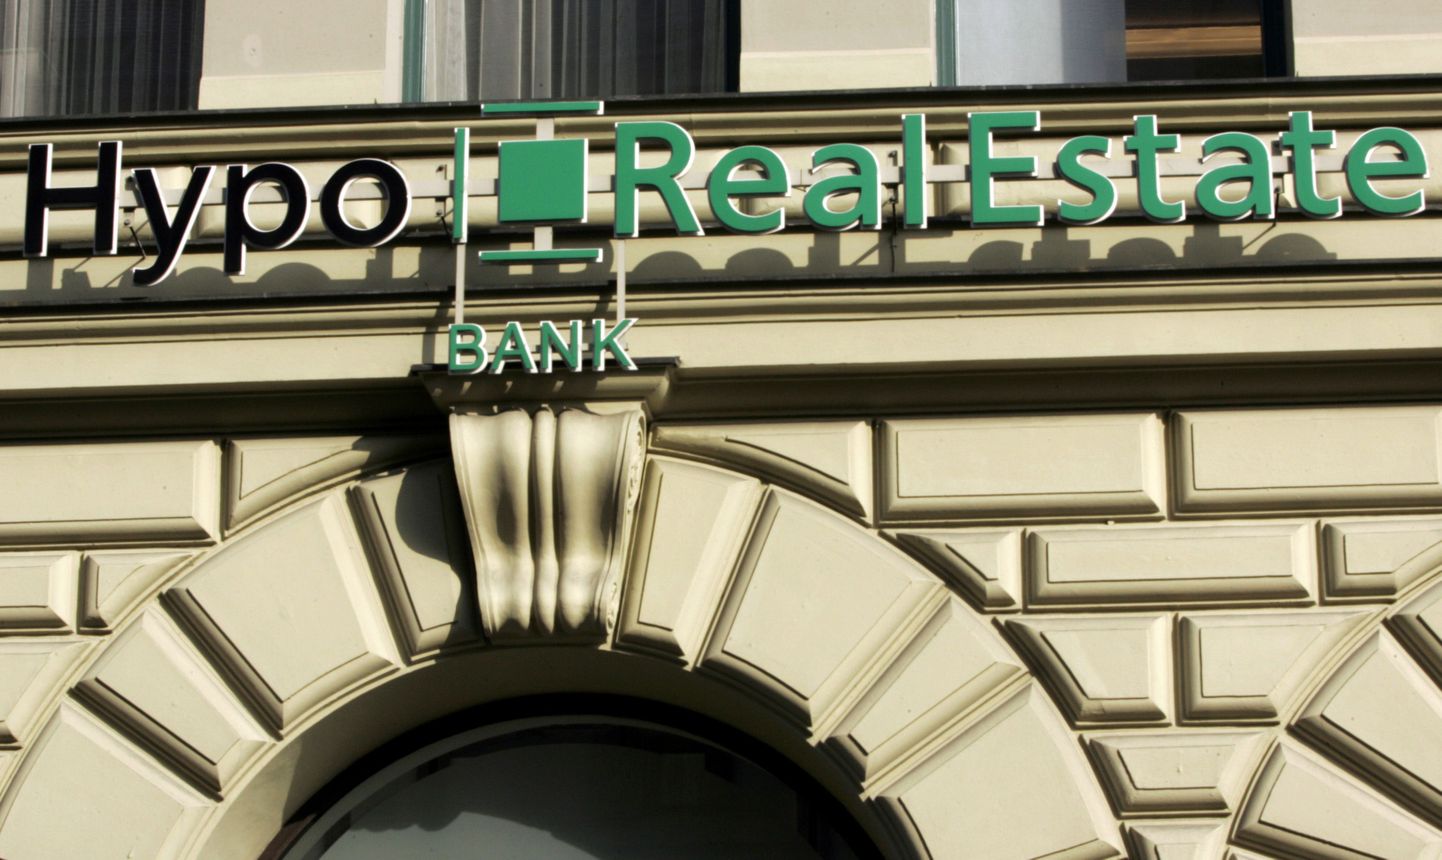 Hypo Real Estate'i logo panga peakorteri sissepääsu kohal Münchenis.